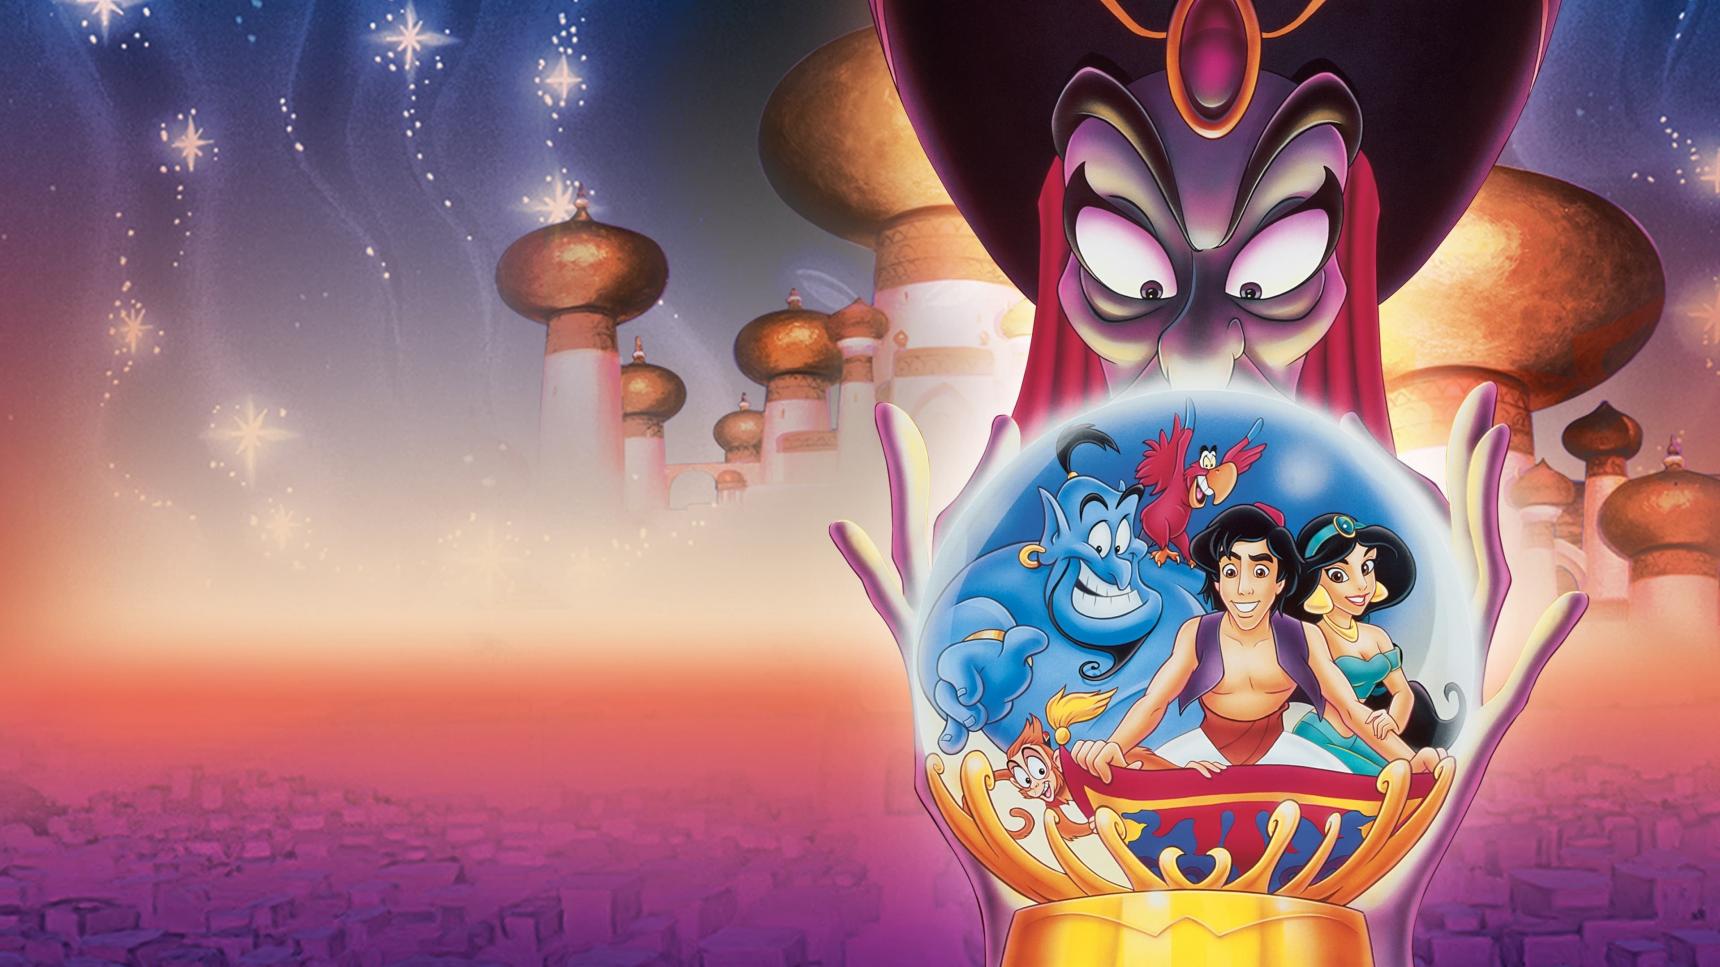 poster de Aladdin 2: El retorno de Jafar